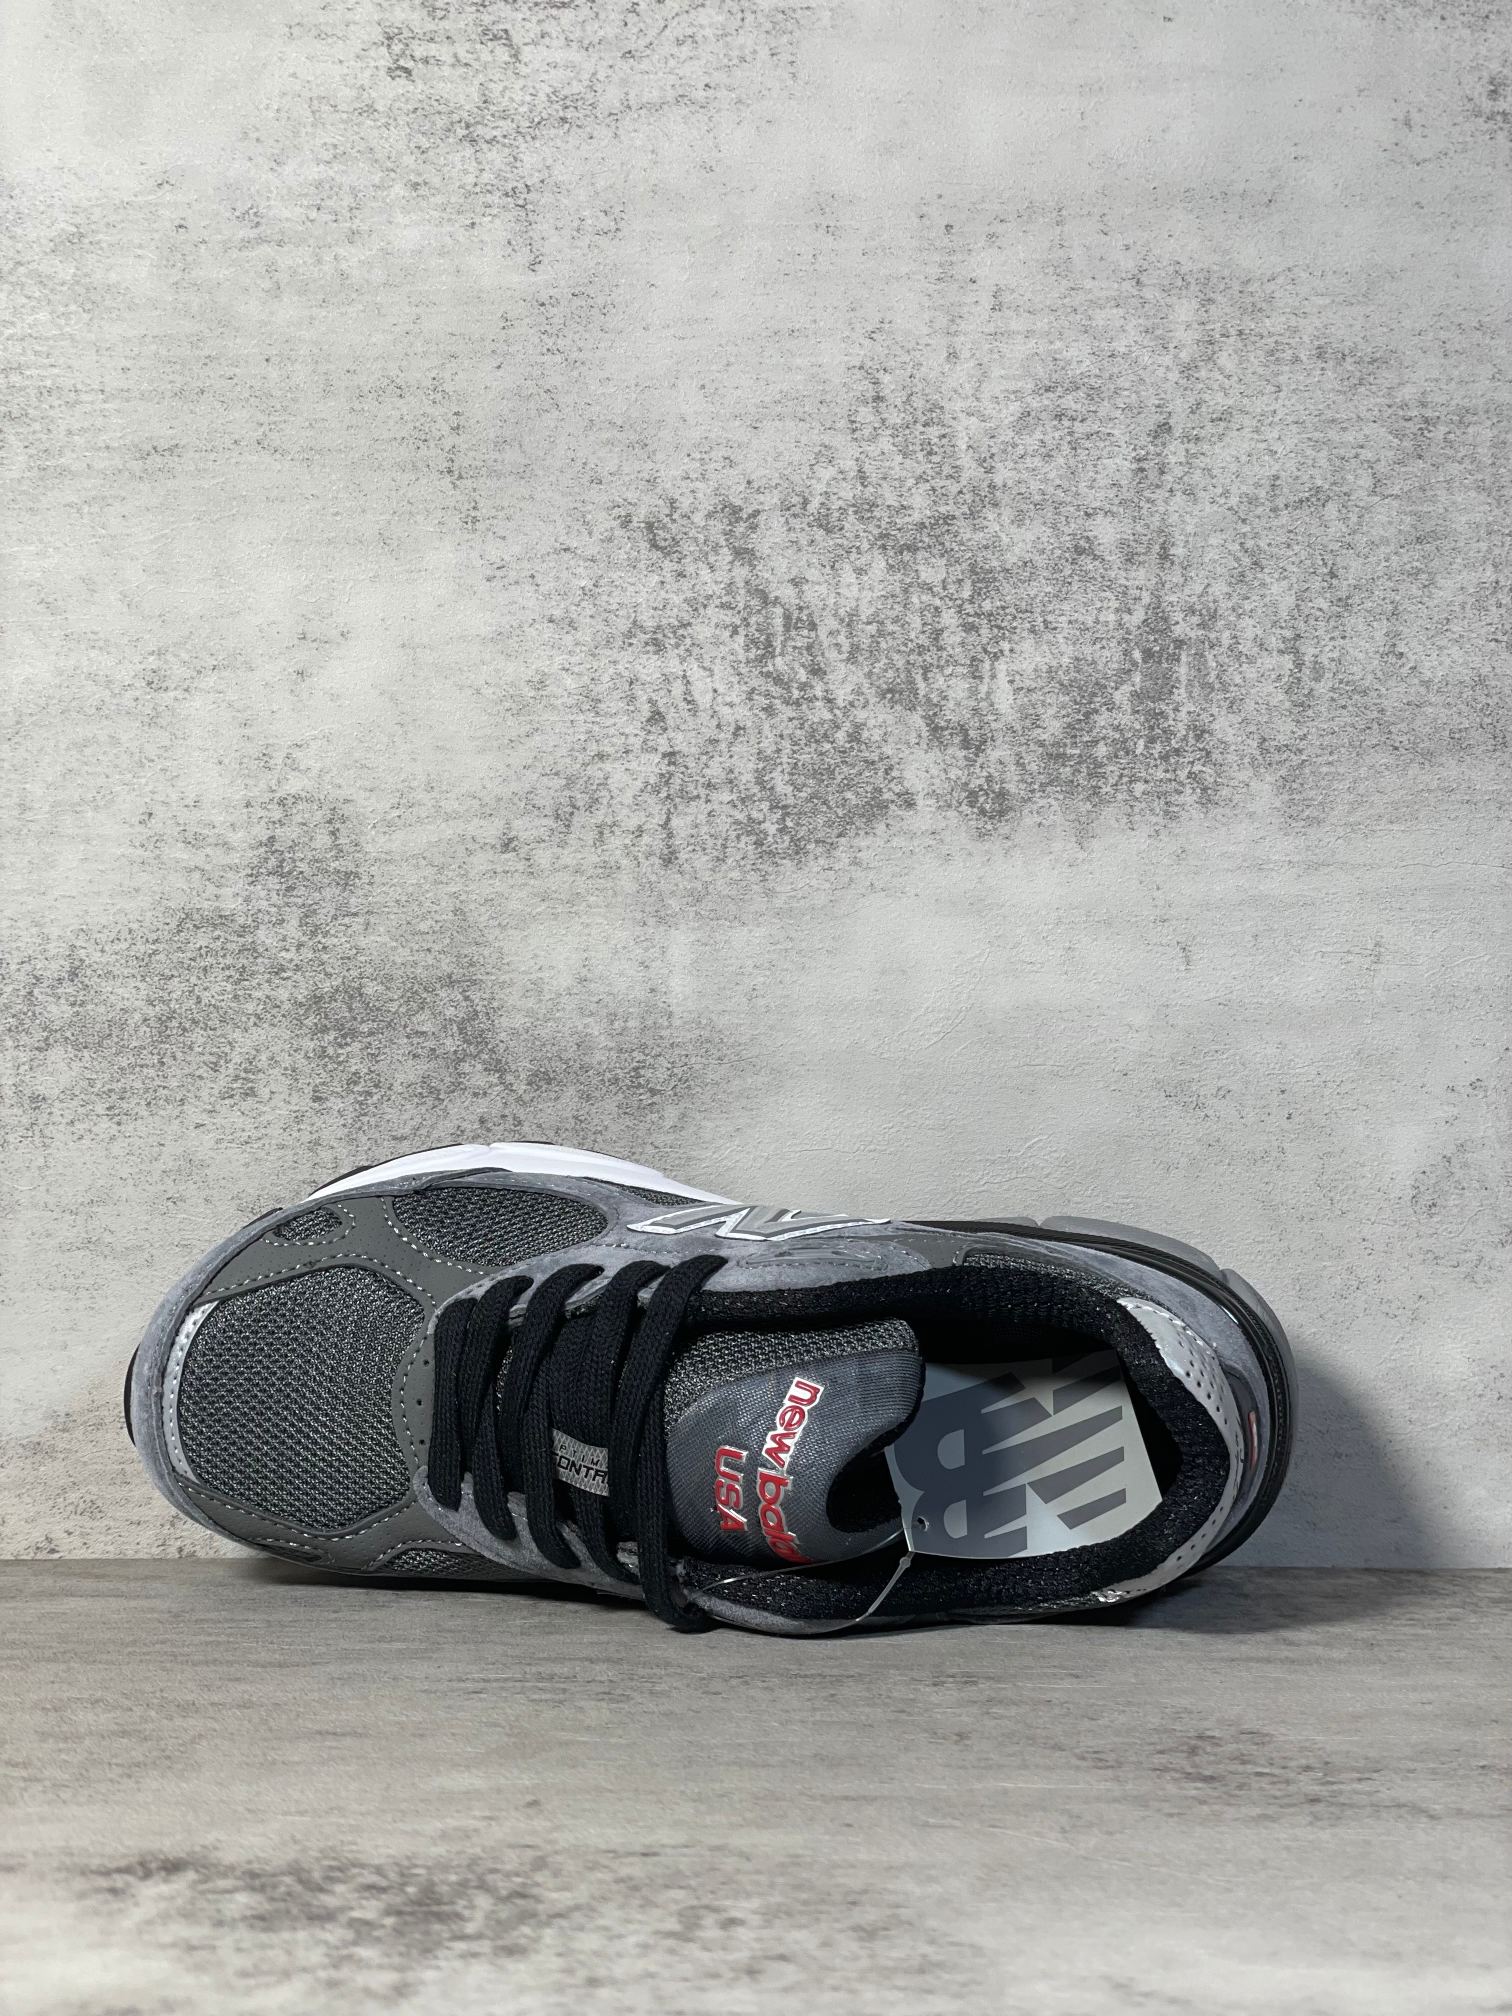 NB990联名款M990DB3外贸纯原版全码出货黑碳灰全市场唯一原鞋开发全鞋使用原材料打造大底单独开模打